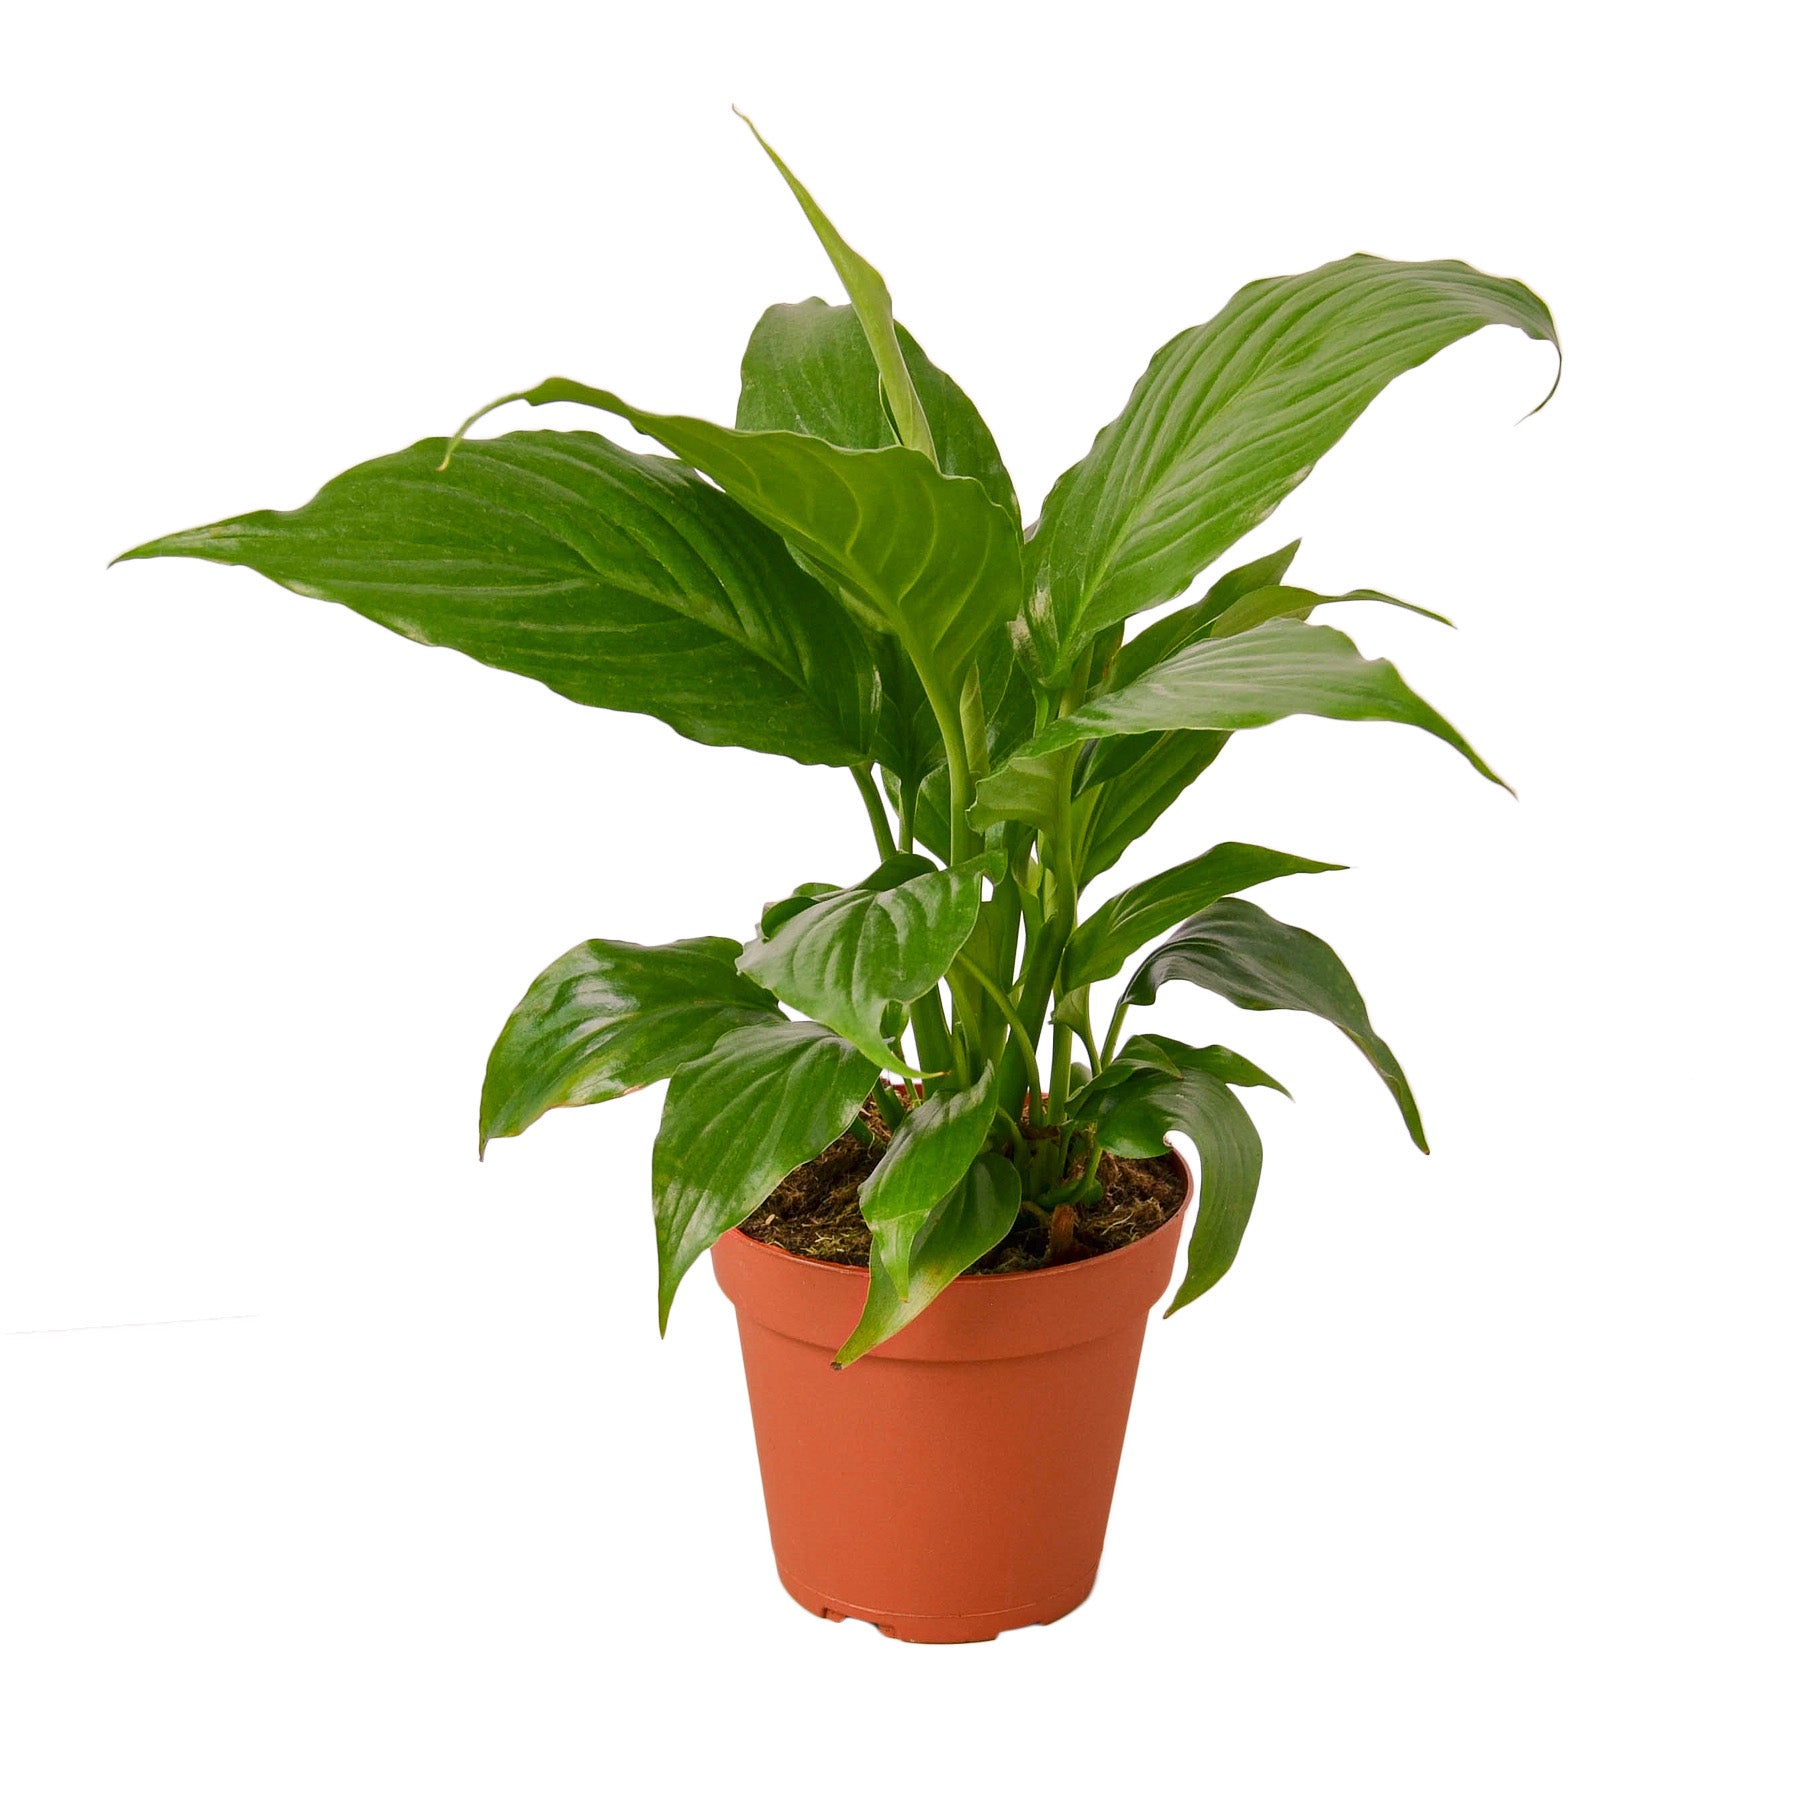 A plant in a pot at a garden center.